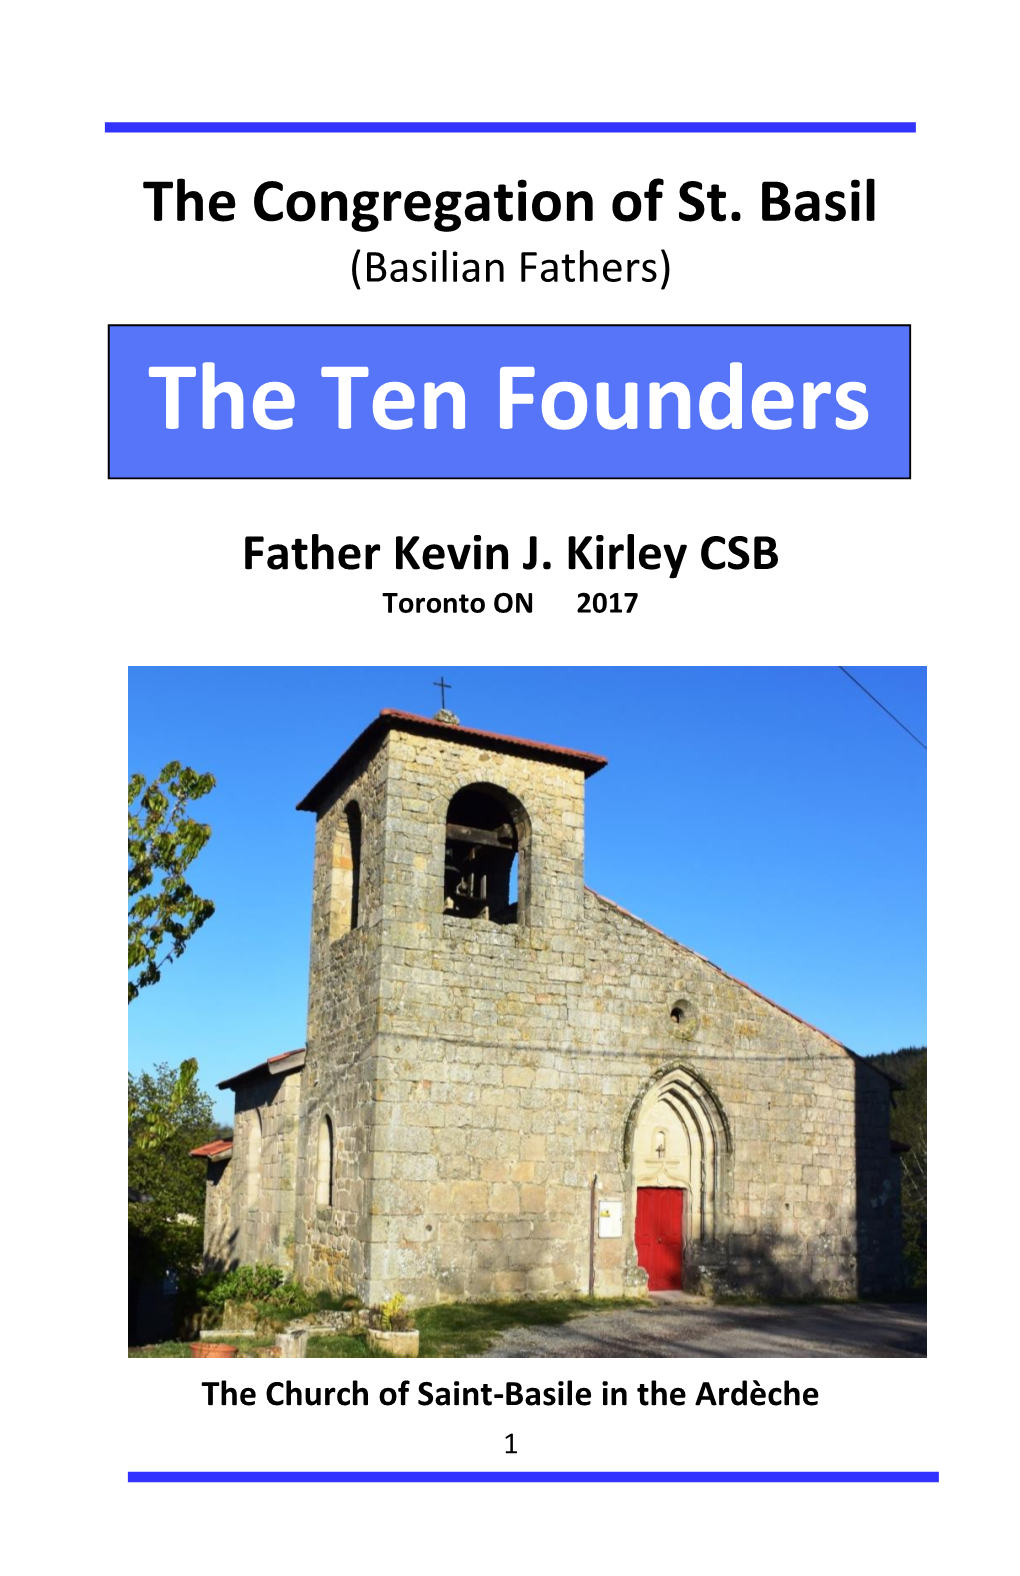 The Ten Founders